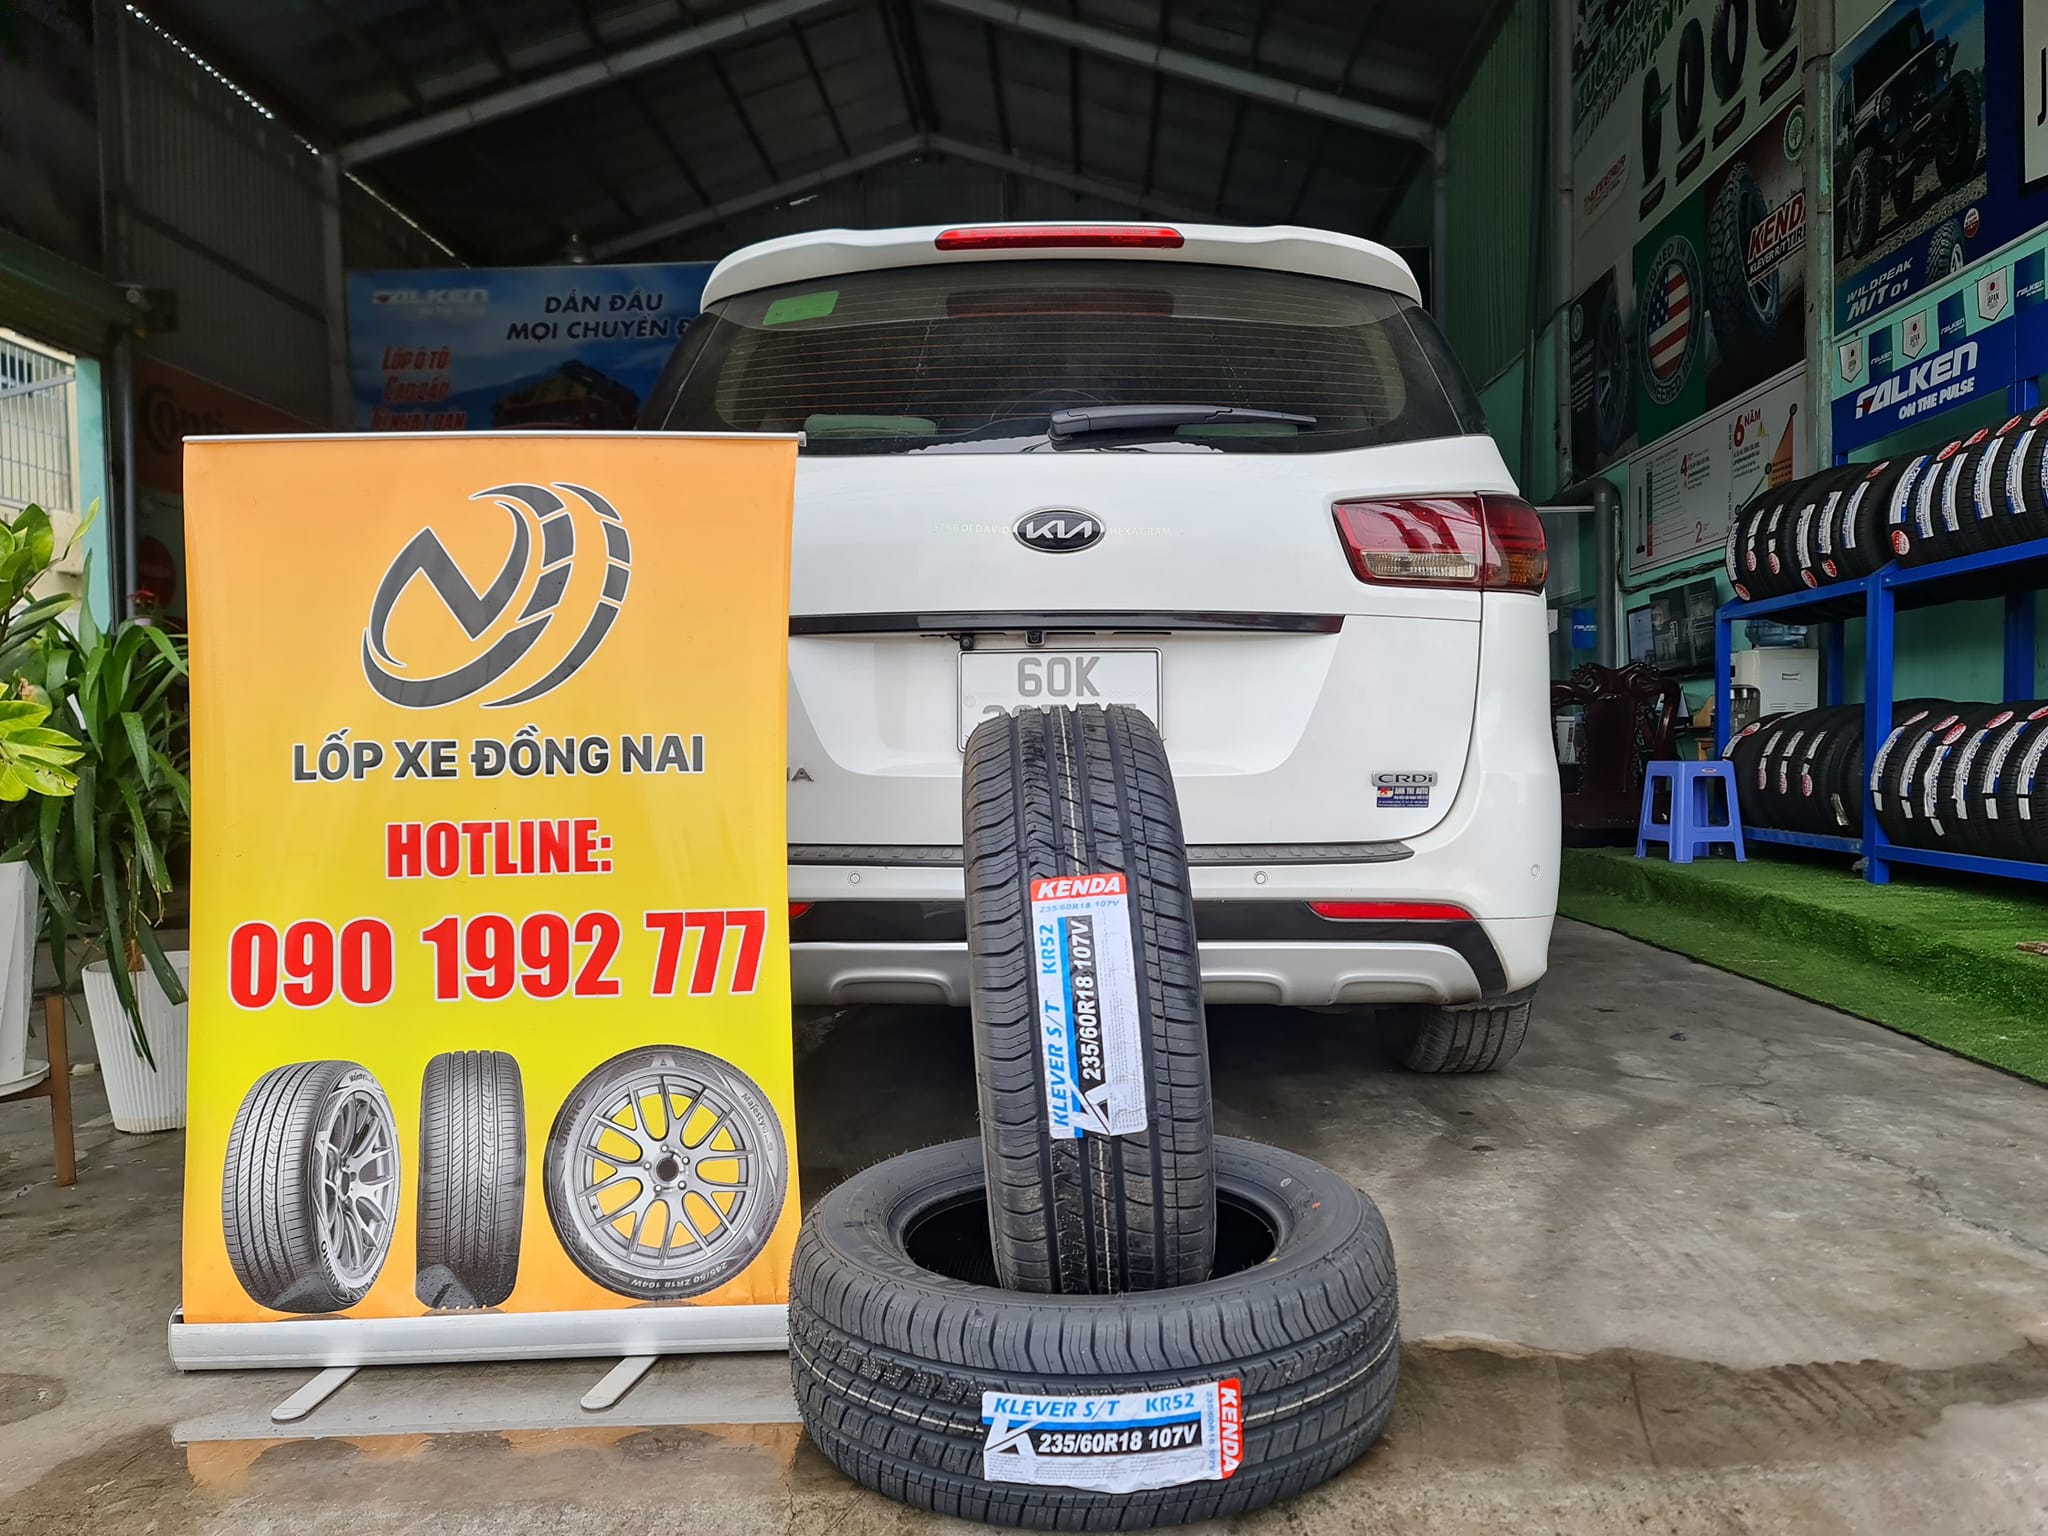 TƯ VẤN : Thay lốp xe Kia Sedona ở Nhơn Trạch, Đồng Nai.